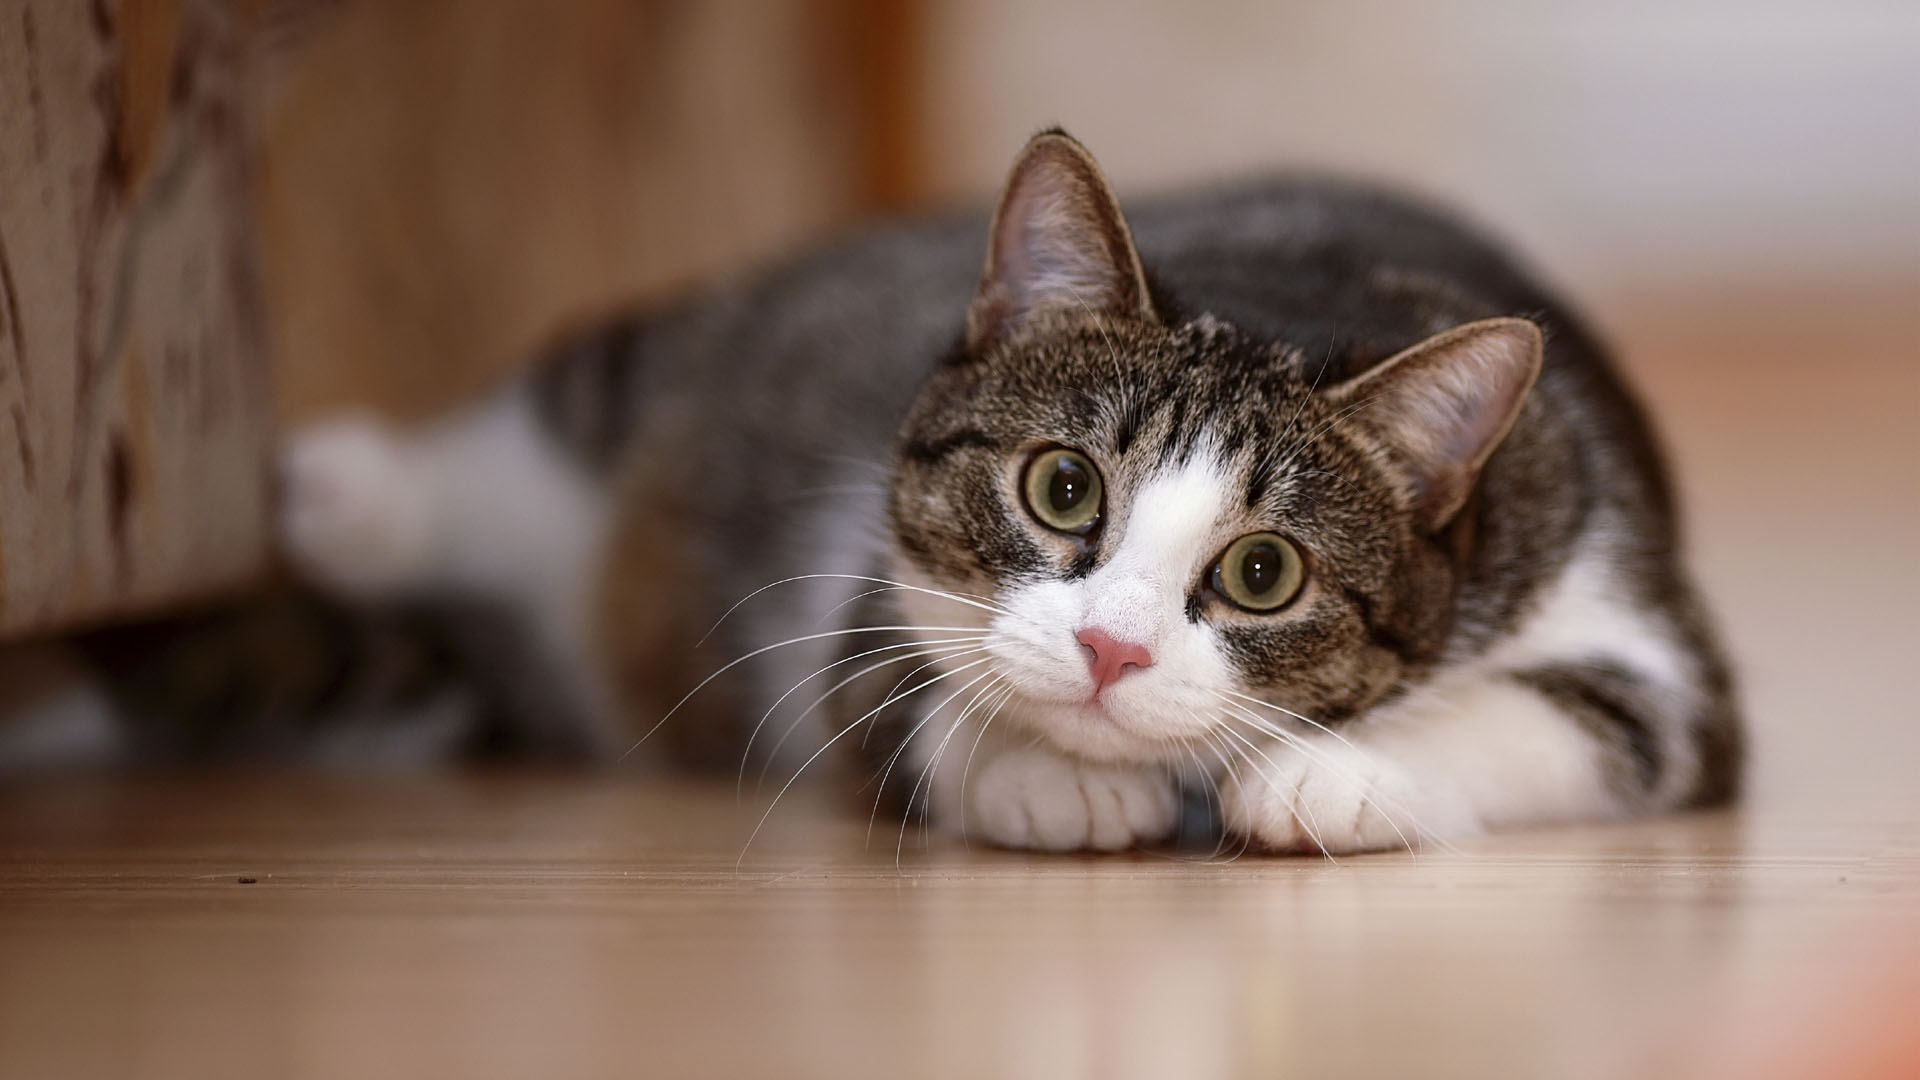 The Meow Parlour es un lugar en el que por cuatro dólares se pueden pasar 30 minutos con felinos disponibles en adopción